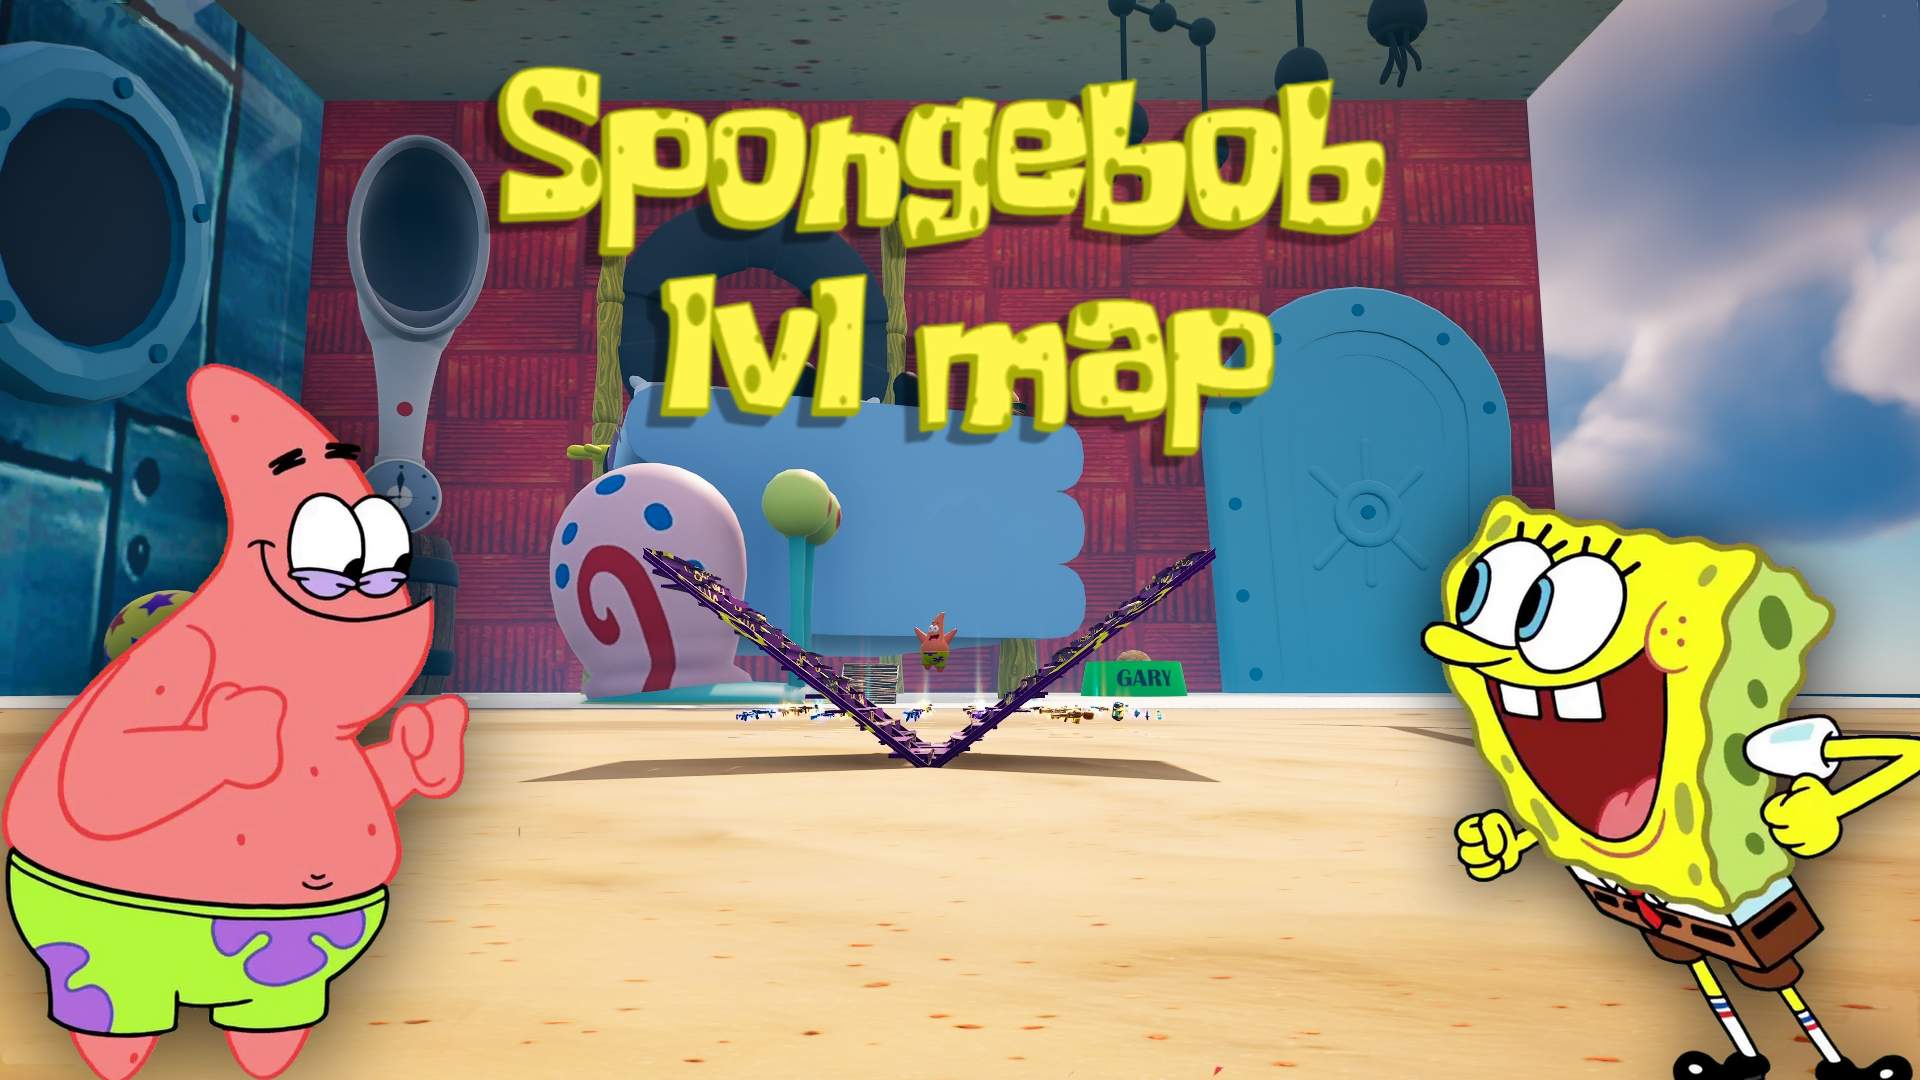 1v1 Spongebob FFA